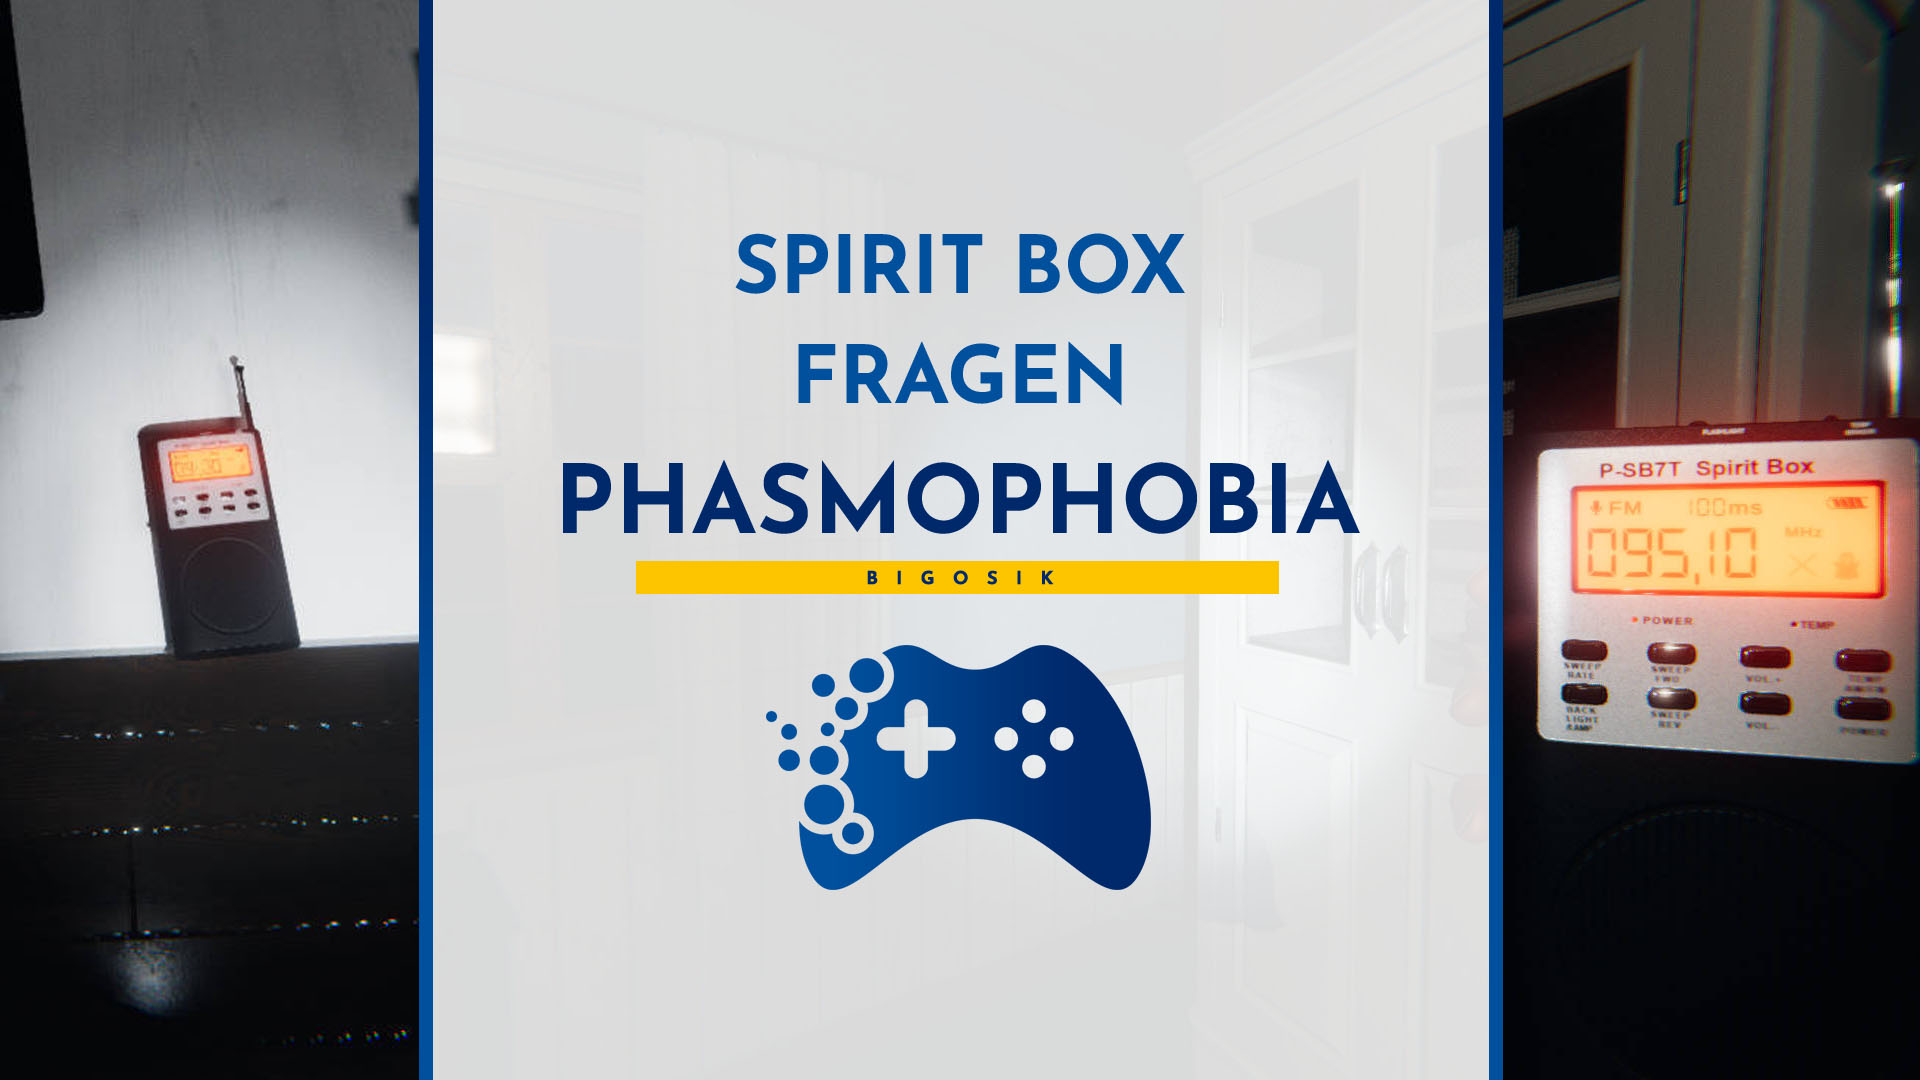 spirit box phasmophobia fragen